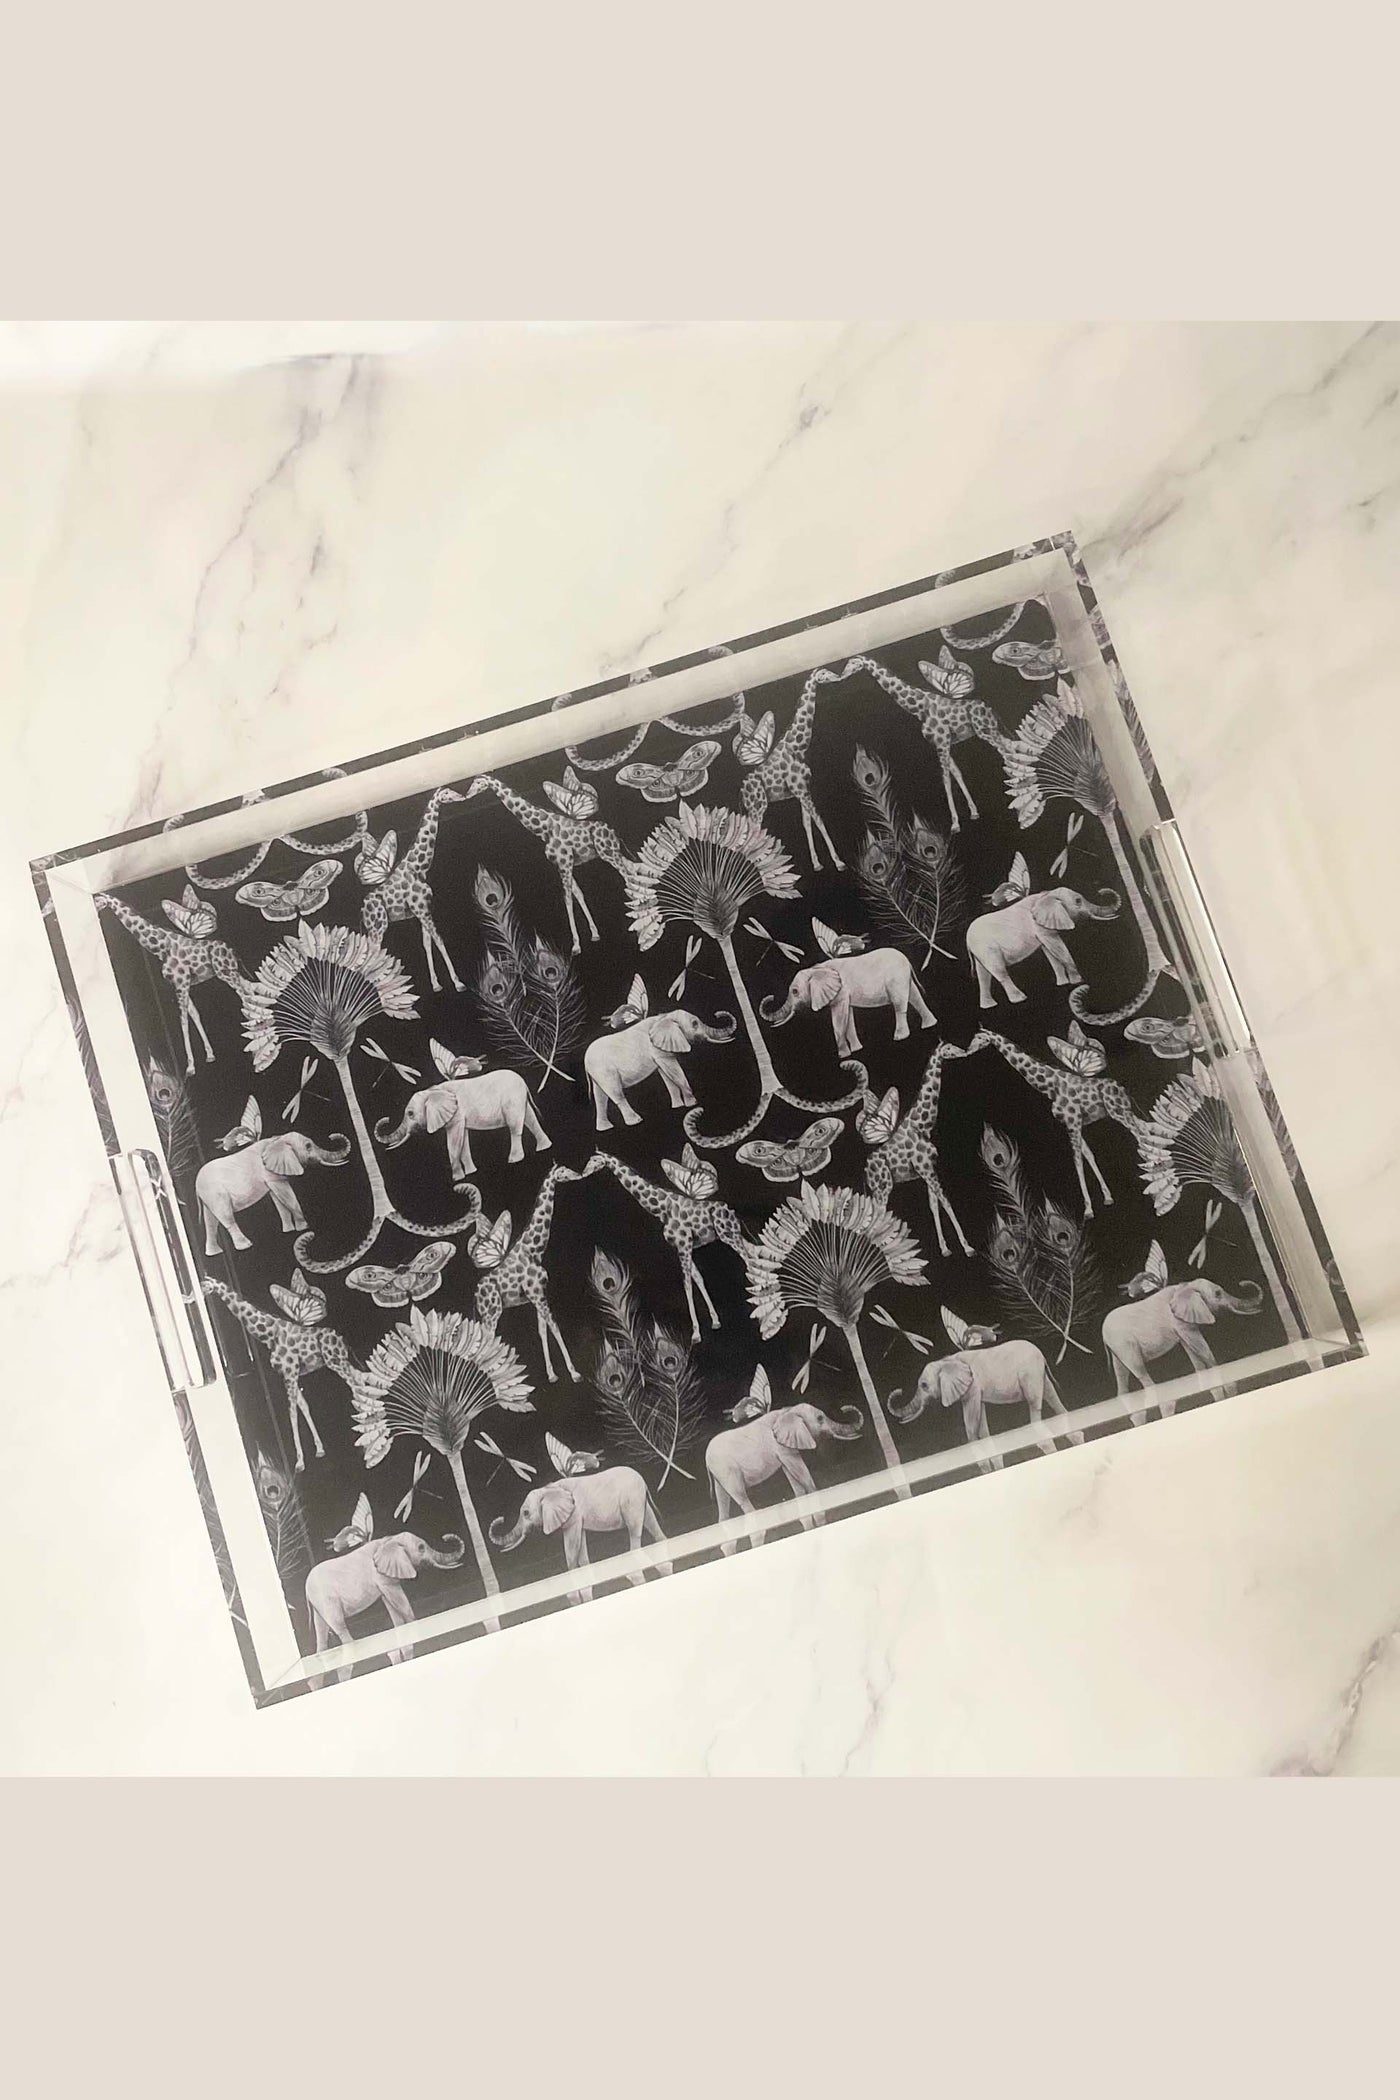 Acrylic Elephant Print Tray Large